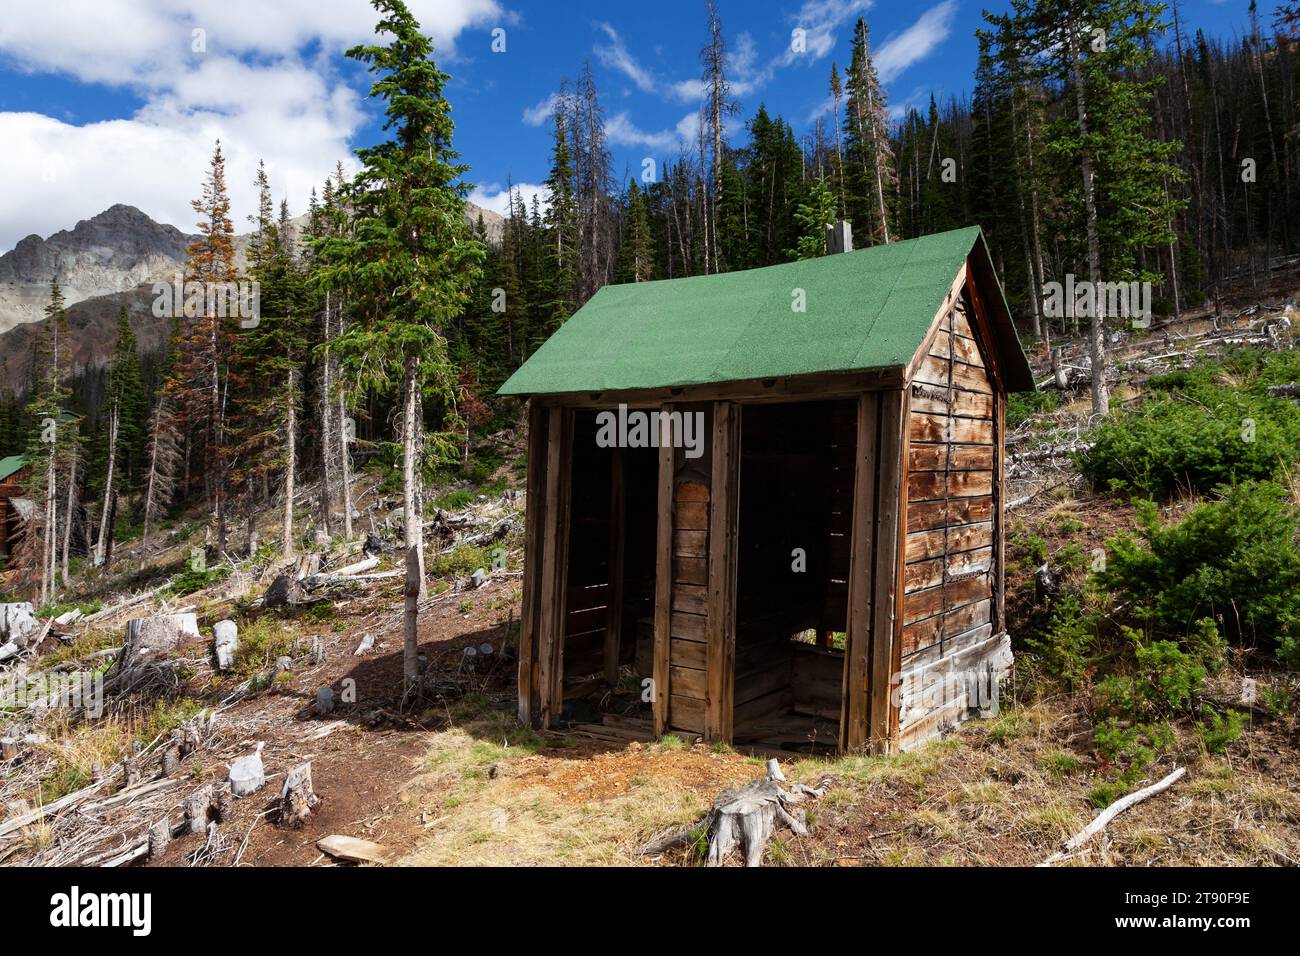 Un pavillon de deux places dans la ville minière abandonnée de Kirwin dans la forêt nationale de Shoshone. Kirwin se trouve dans les montagnes Absaroka à l'ouest de la ville o Banque D'Images